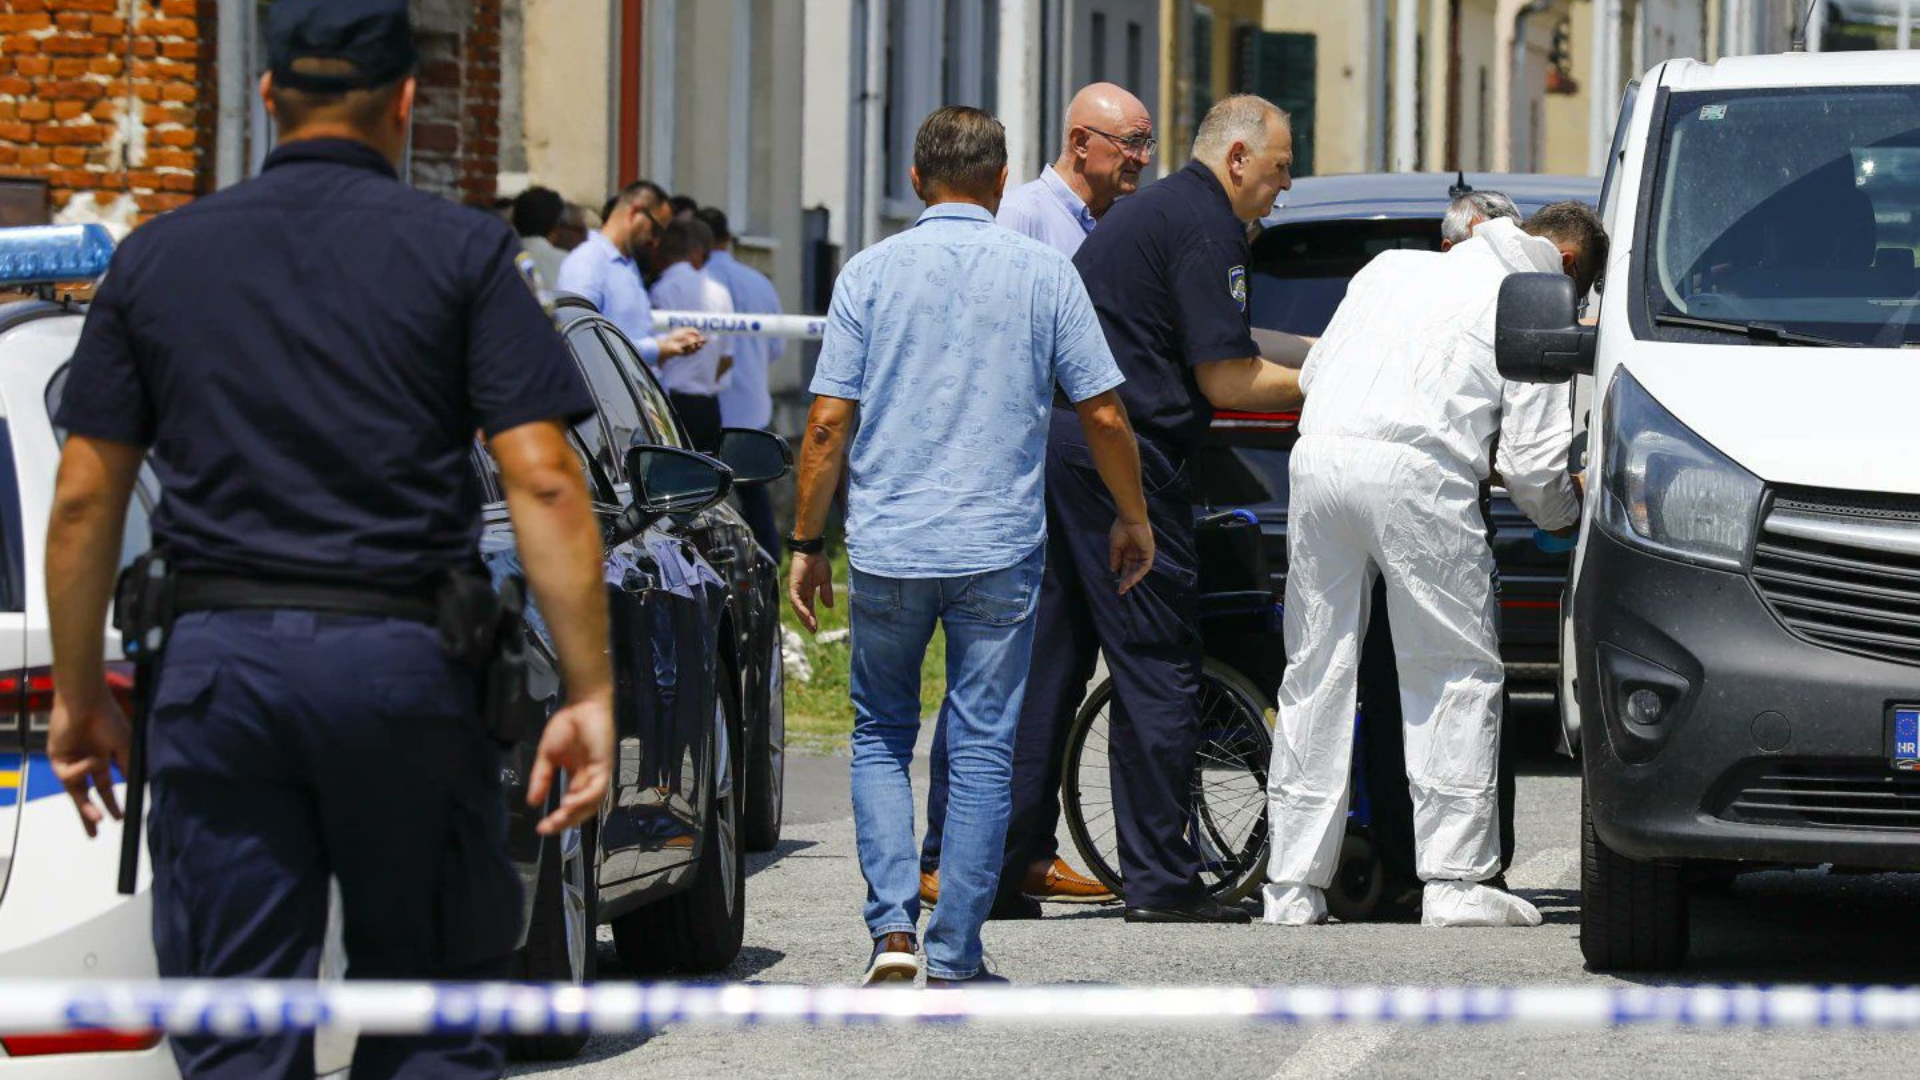 Croazia, tragedia in una casa di riposo: 6 morti per una sparatoria VIDEO